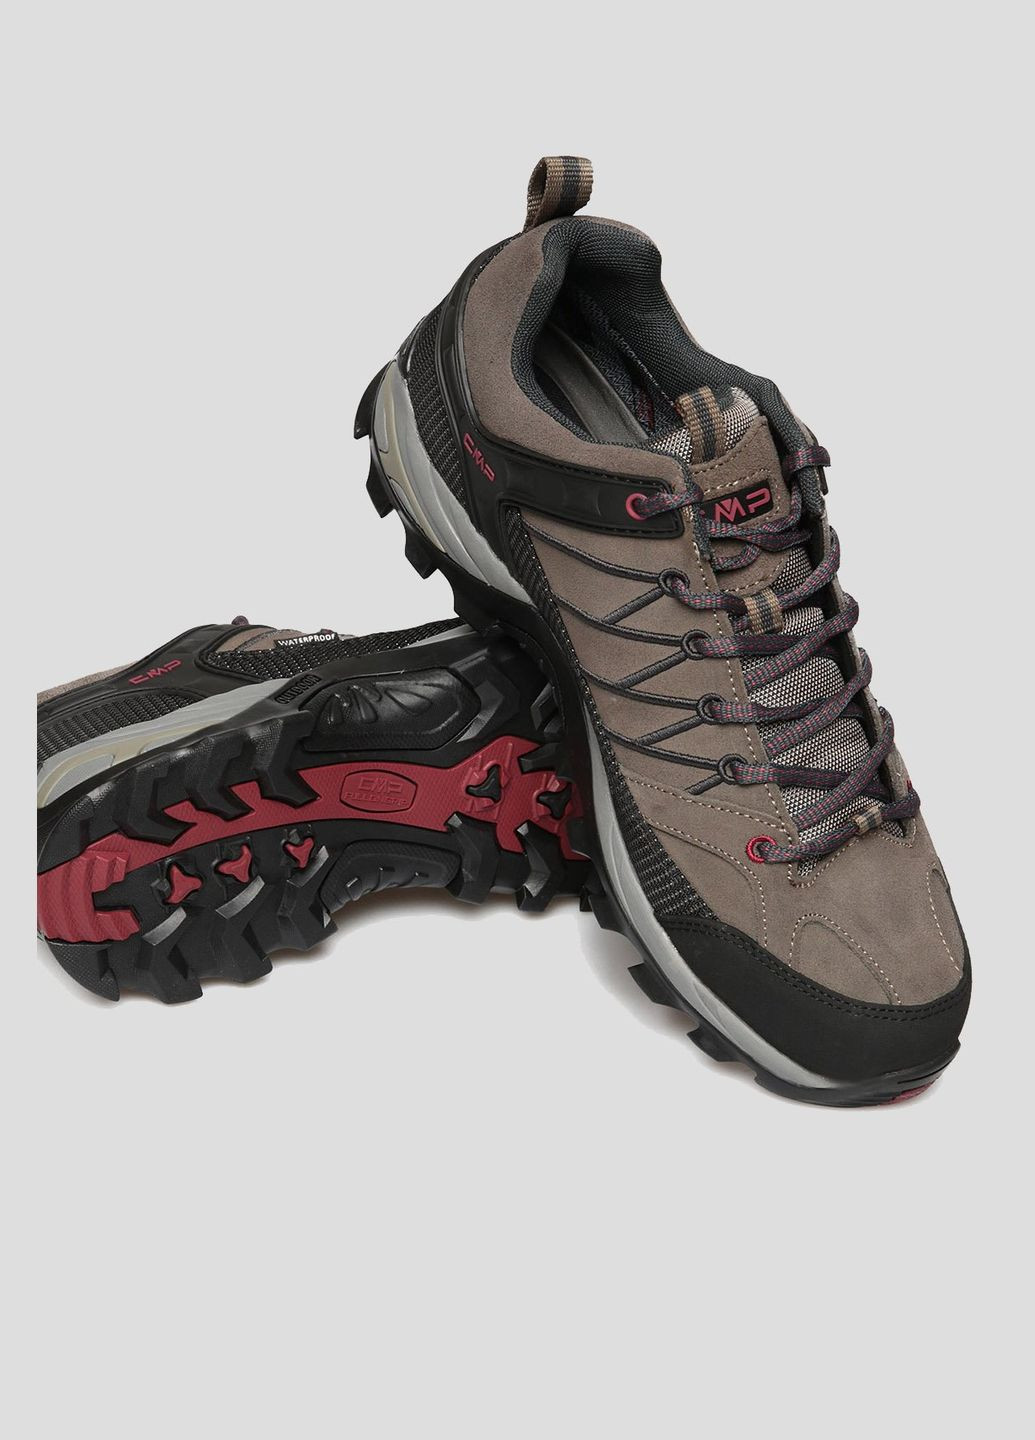 Оливковые (хаки) демисезонные замшевые ботинки цвета хаки rigel low trekking shoes wp CMP